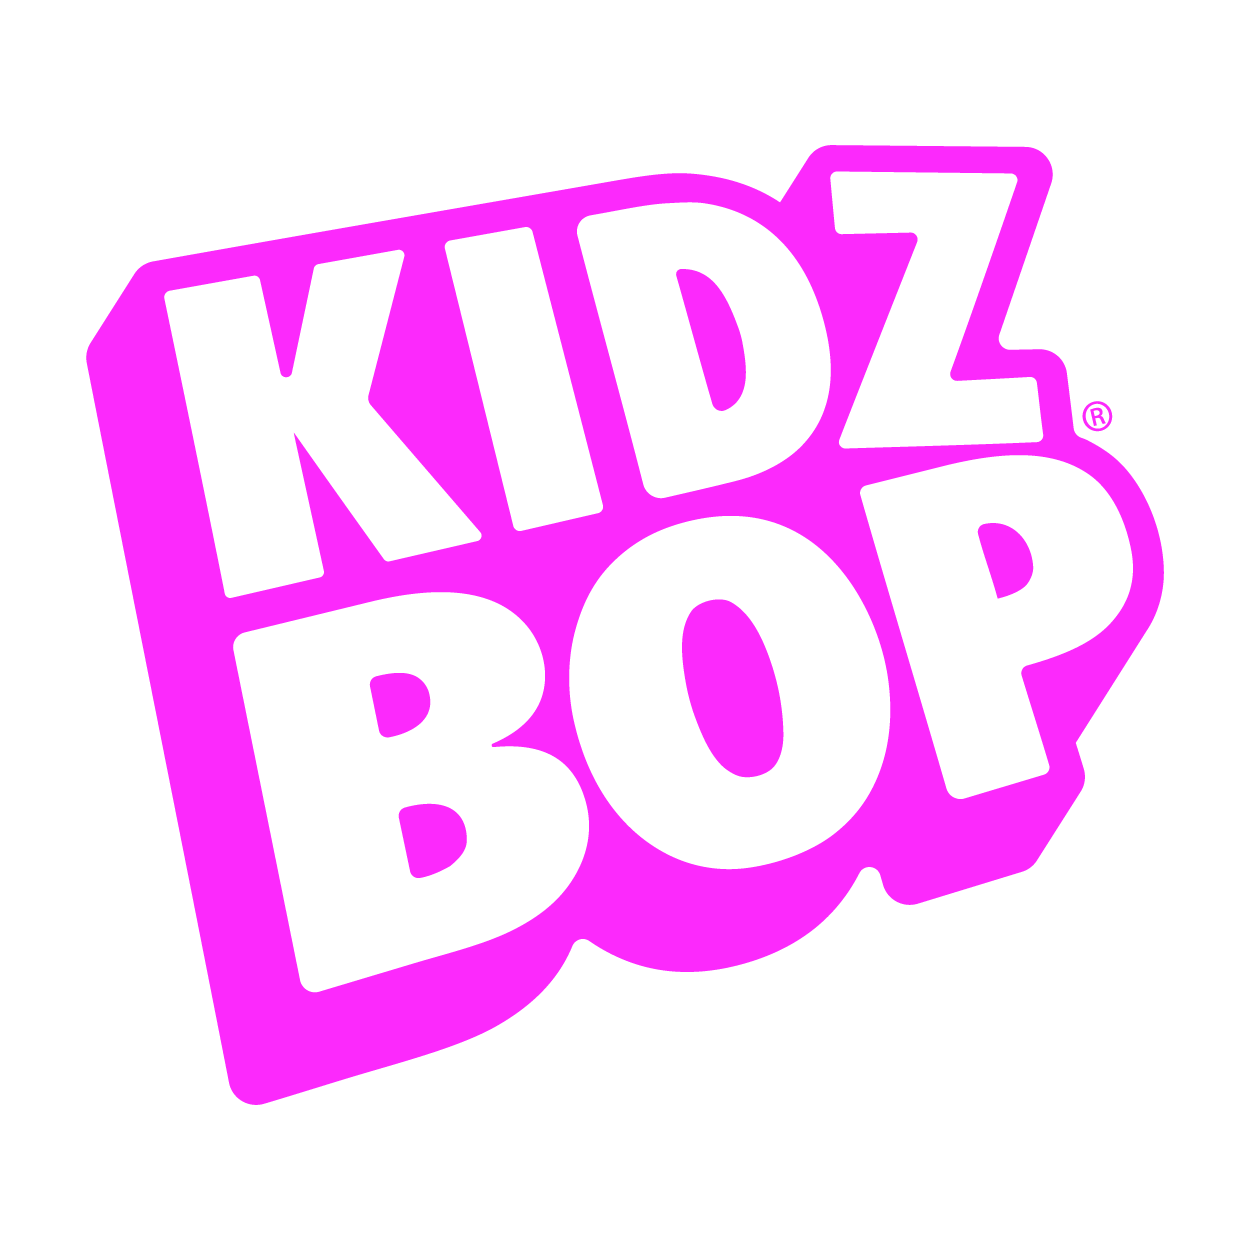 KIDZ BOP logo